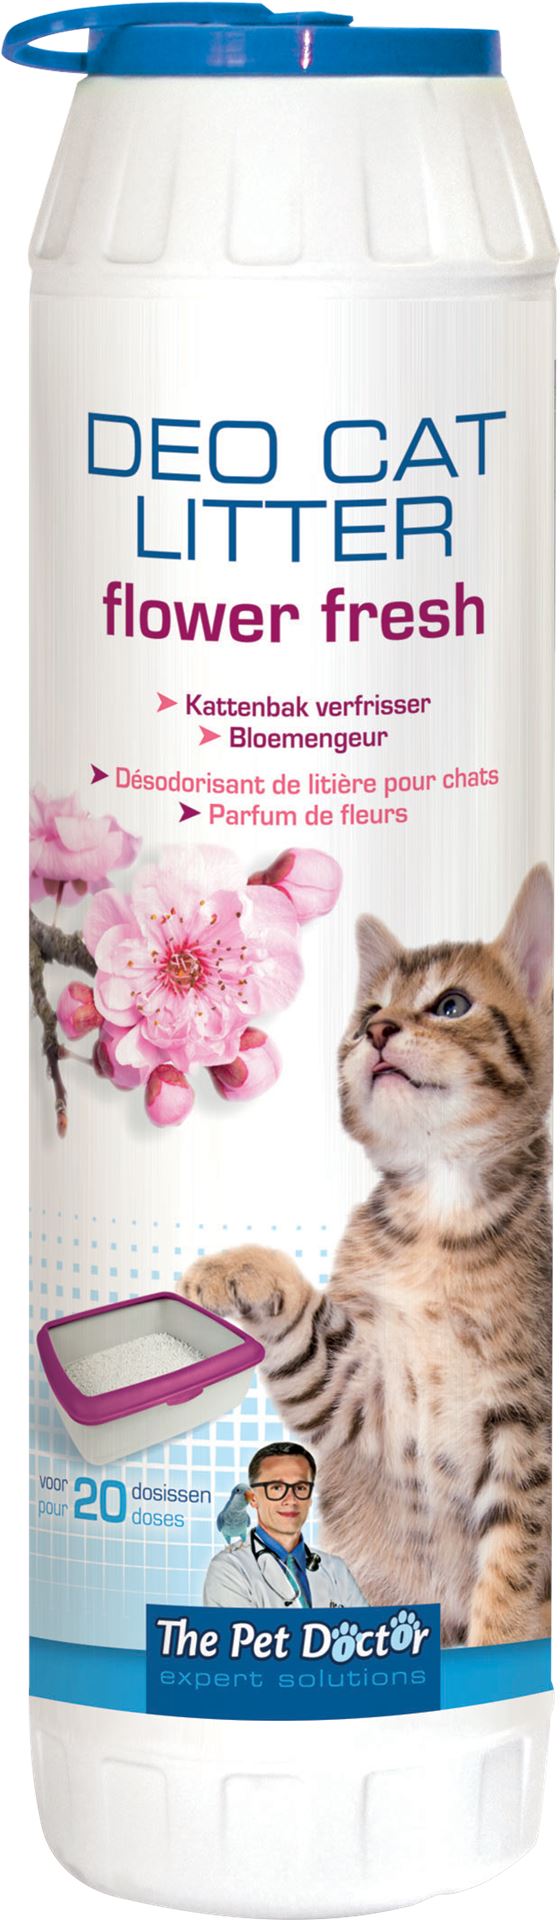 Deo-cat-litter-flower-fresh-750gr-verlengt-het-gebruik-van-kattenbakvulling